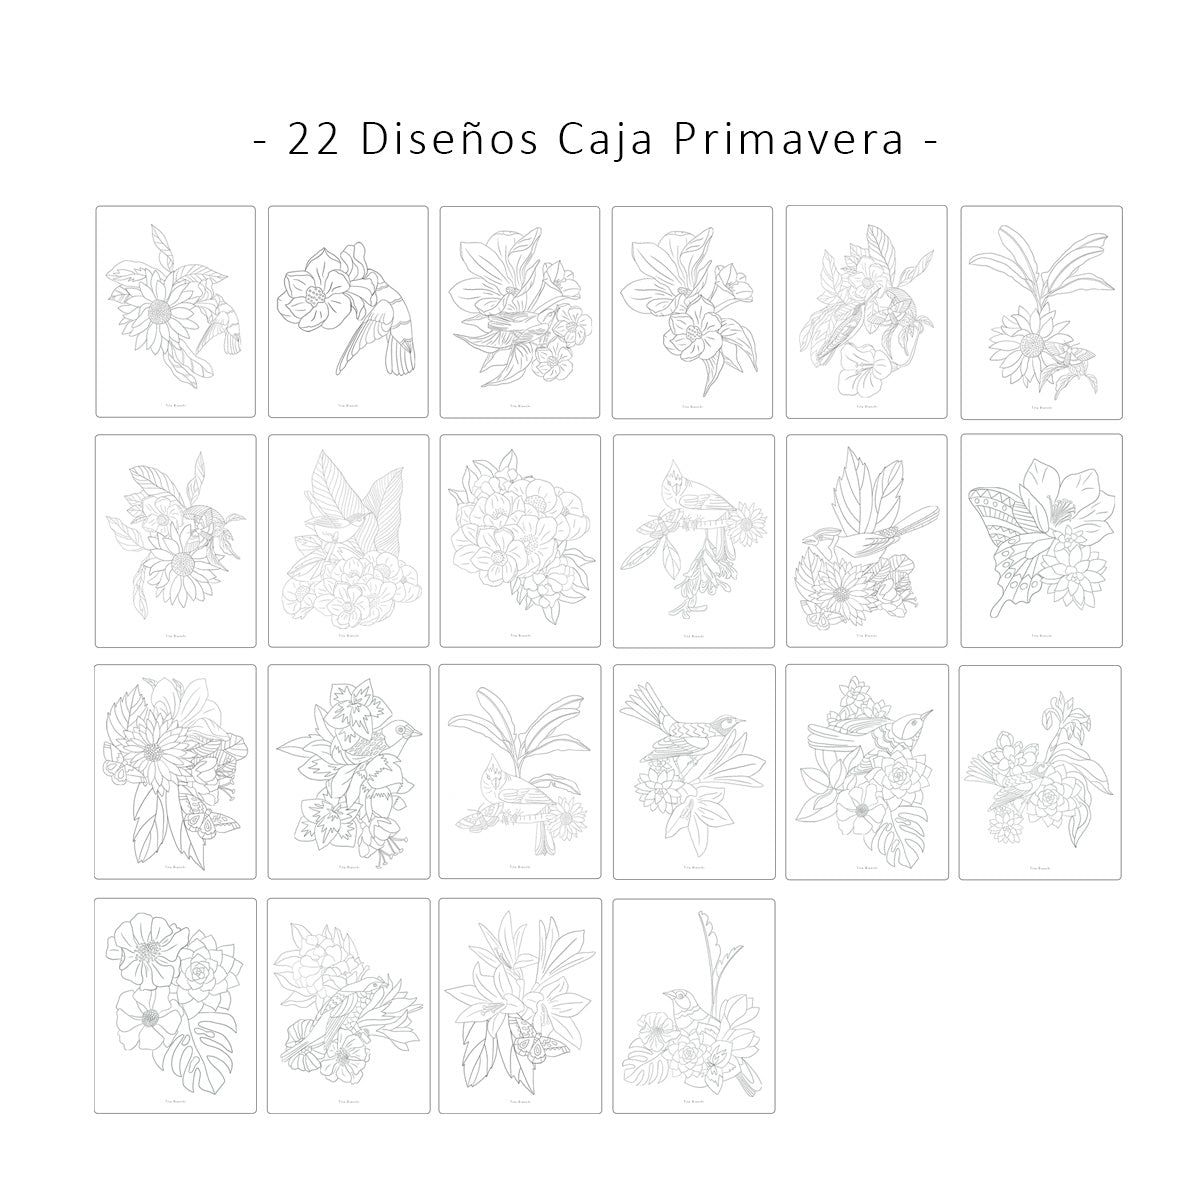 22 diseños de la caja primavera. Laminas para pintar con dibujos de flores, hojas, pájaros y mariposas.